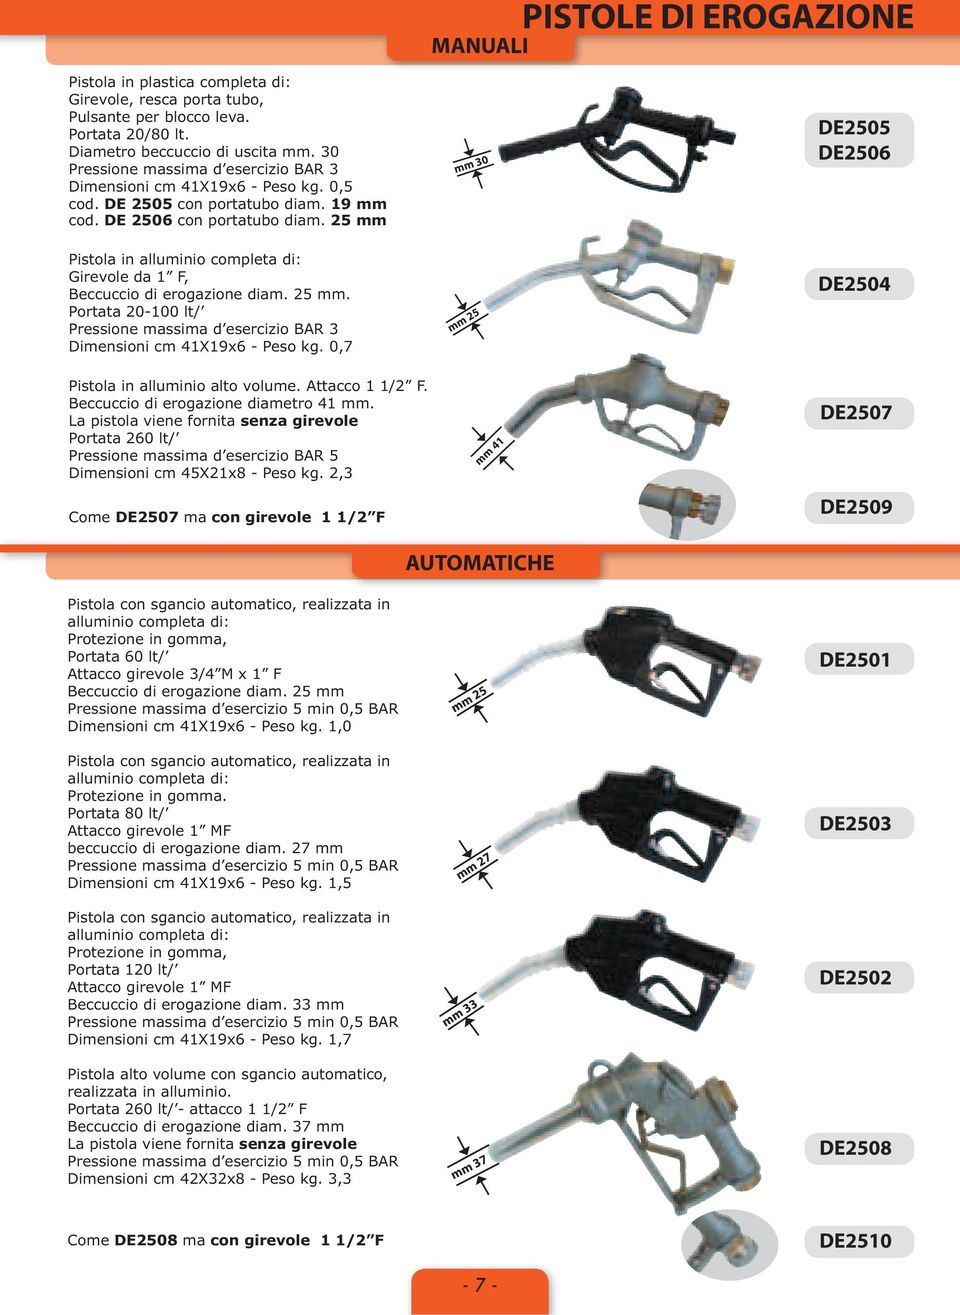 25 mm mm 30 DE2505 DE2506 Pistola in alluminio completa di: Girevole da 1 F, Beccuccio di erogazione diam. 25 mm.